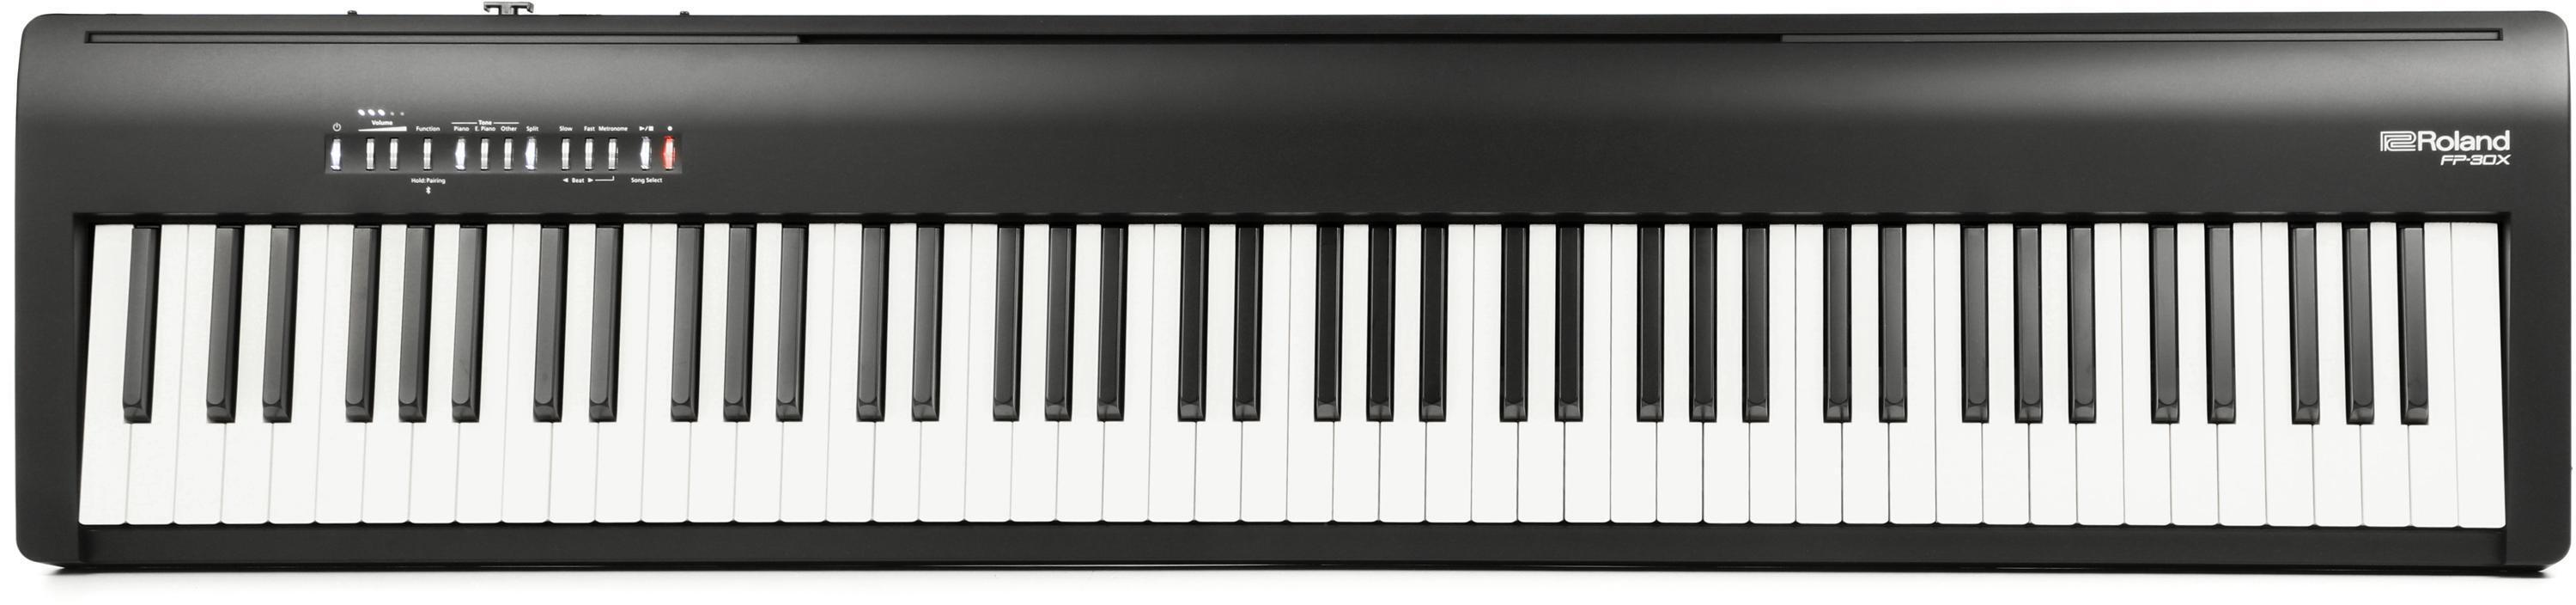 FP-30X Roland Le piano numérique portable du moment 